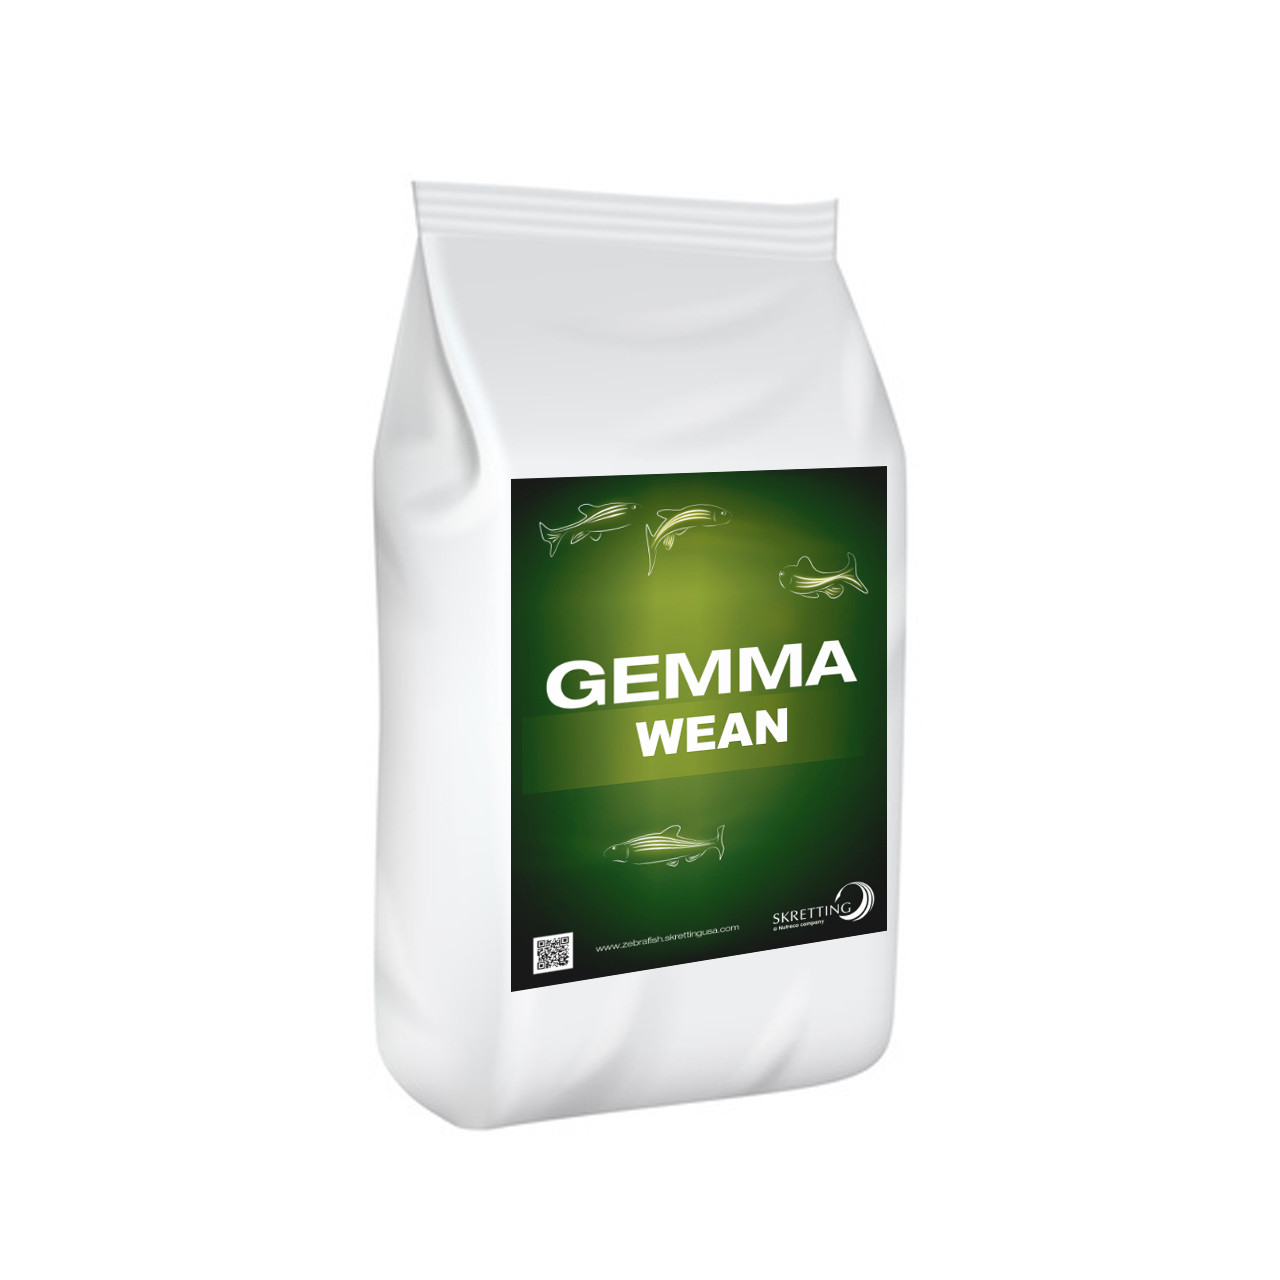 Skretting Alimento Gemma Wean de 0.2 mm